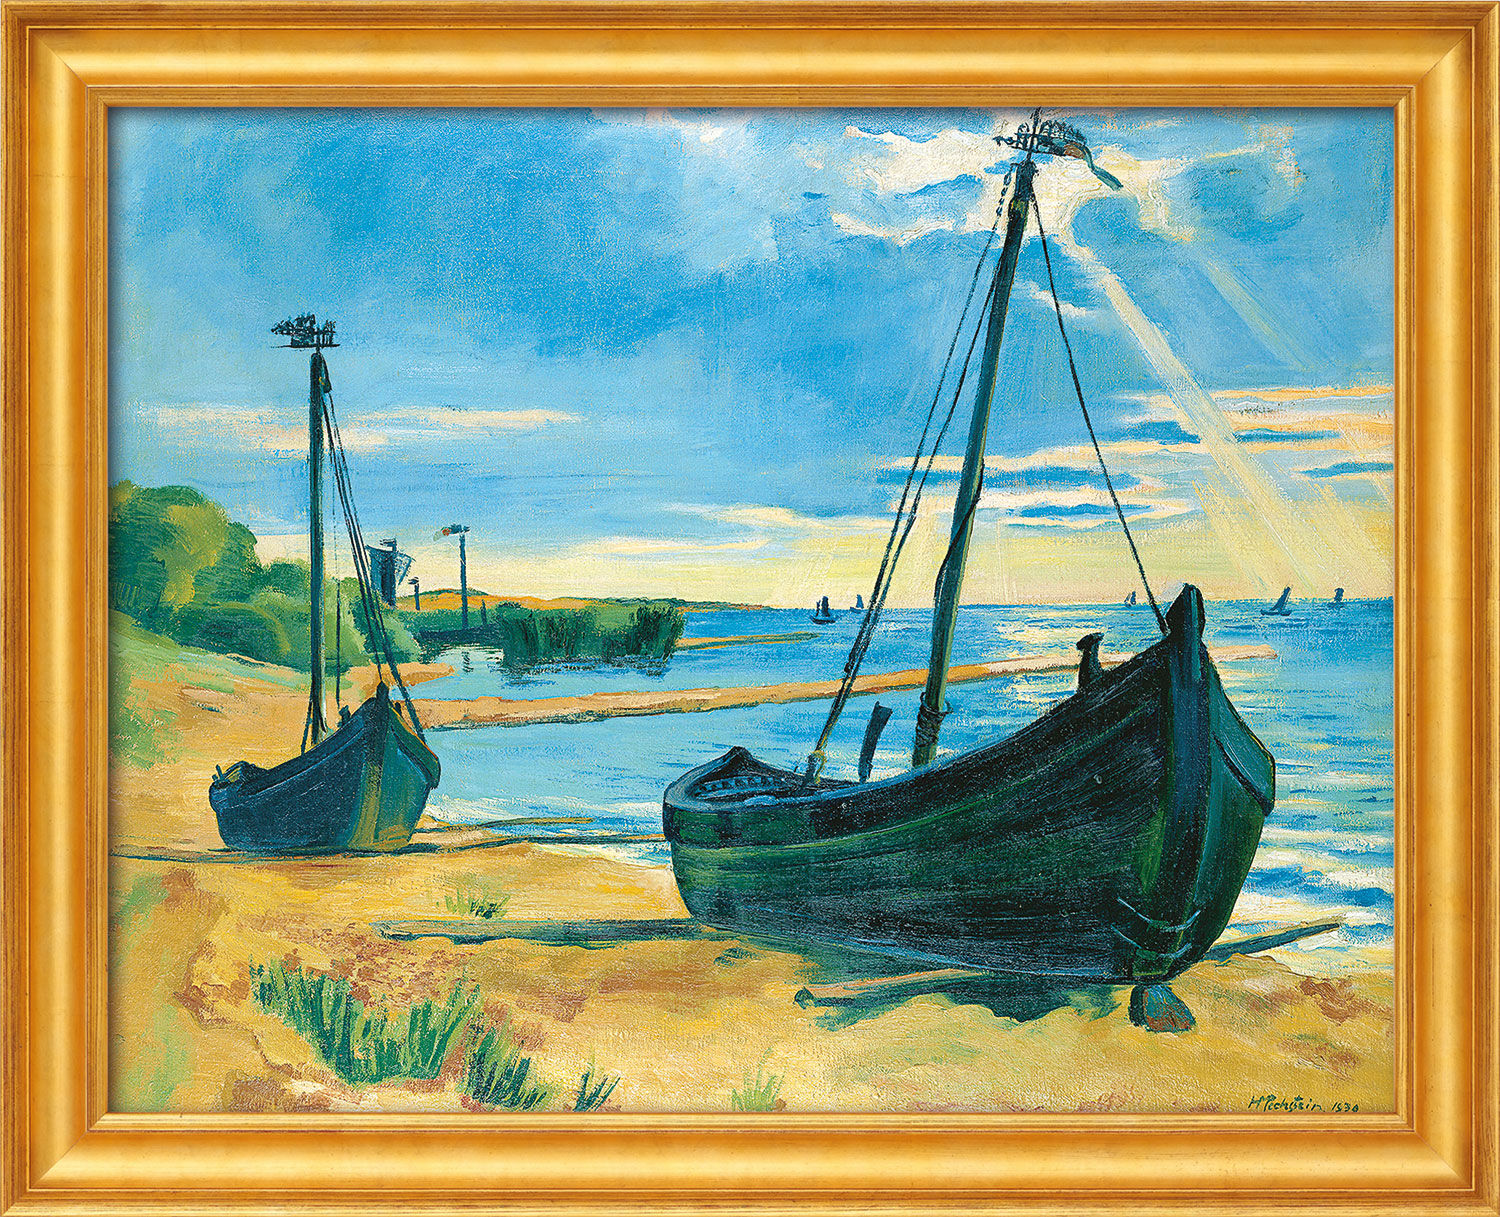 Picture "Keitelkähne Under Sail" (1939), golden framed version by Max Pechstein